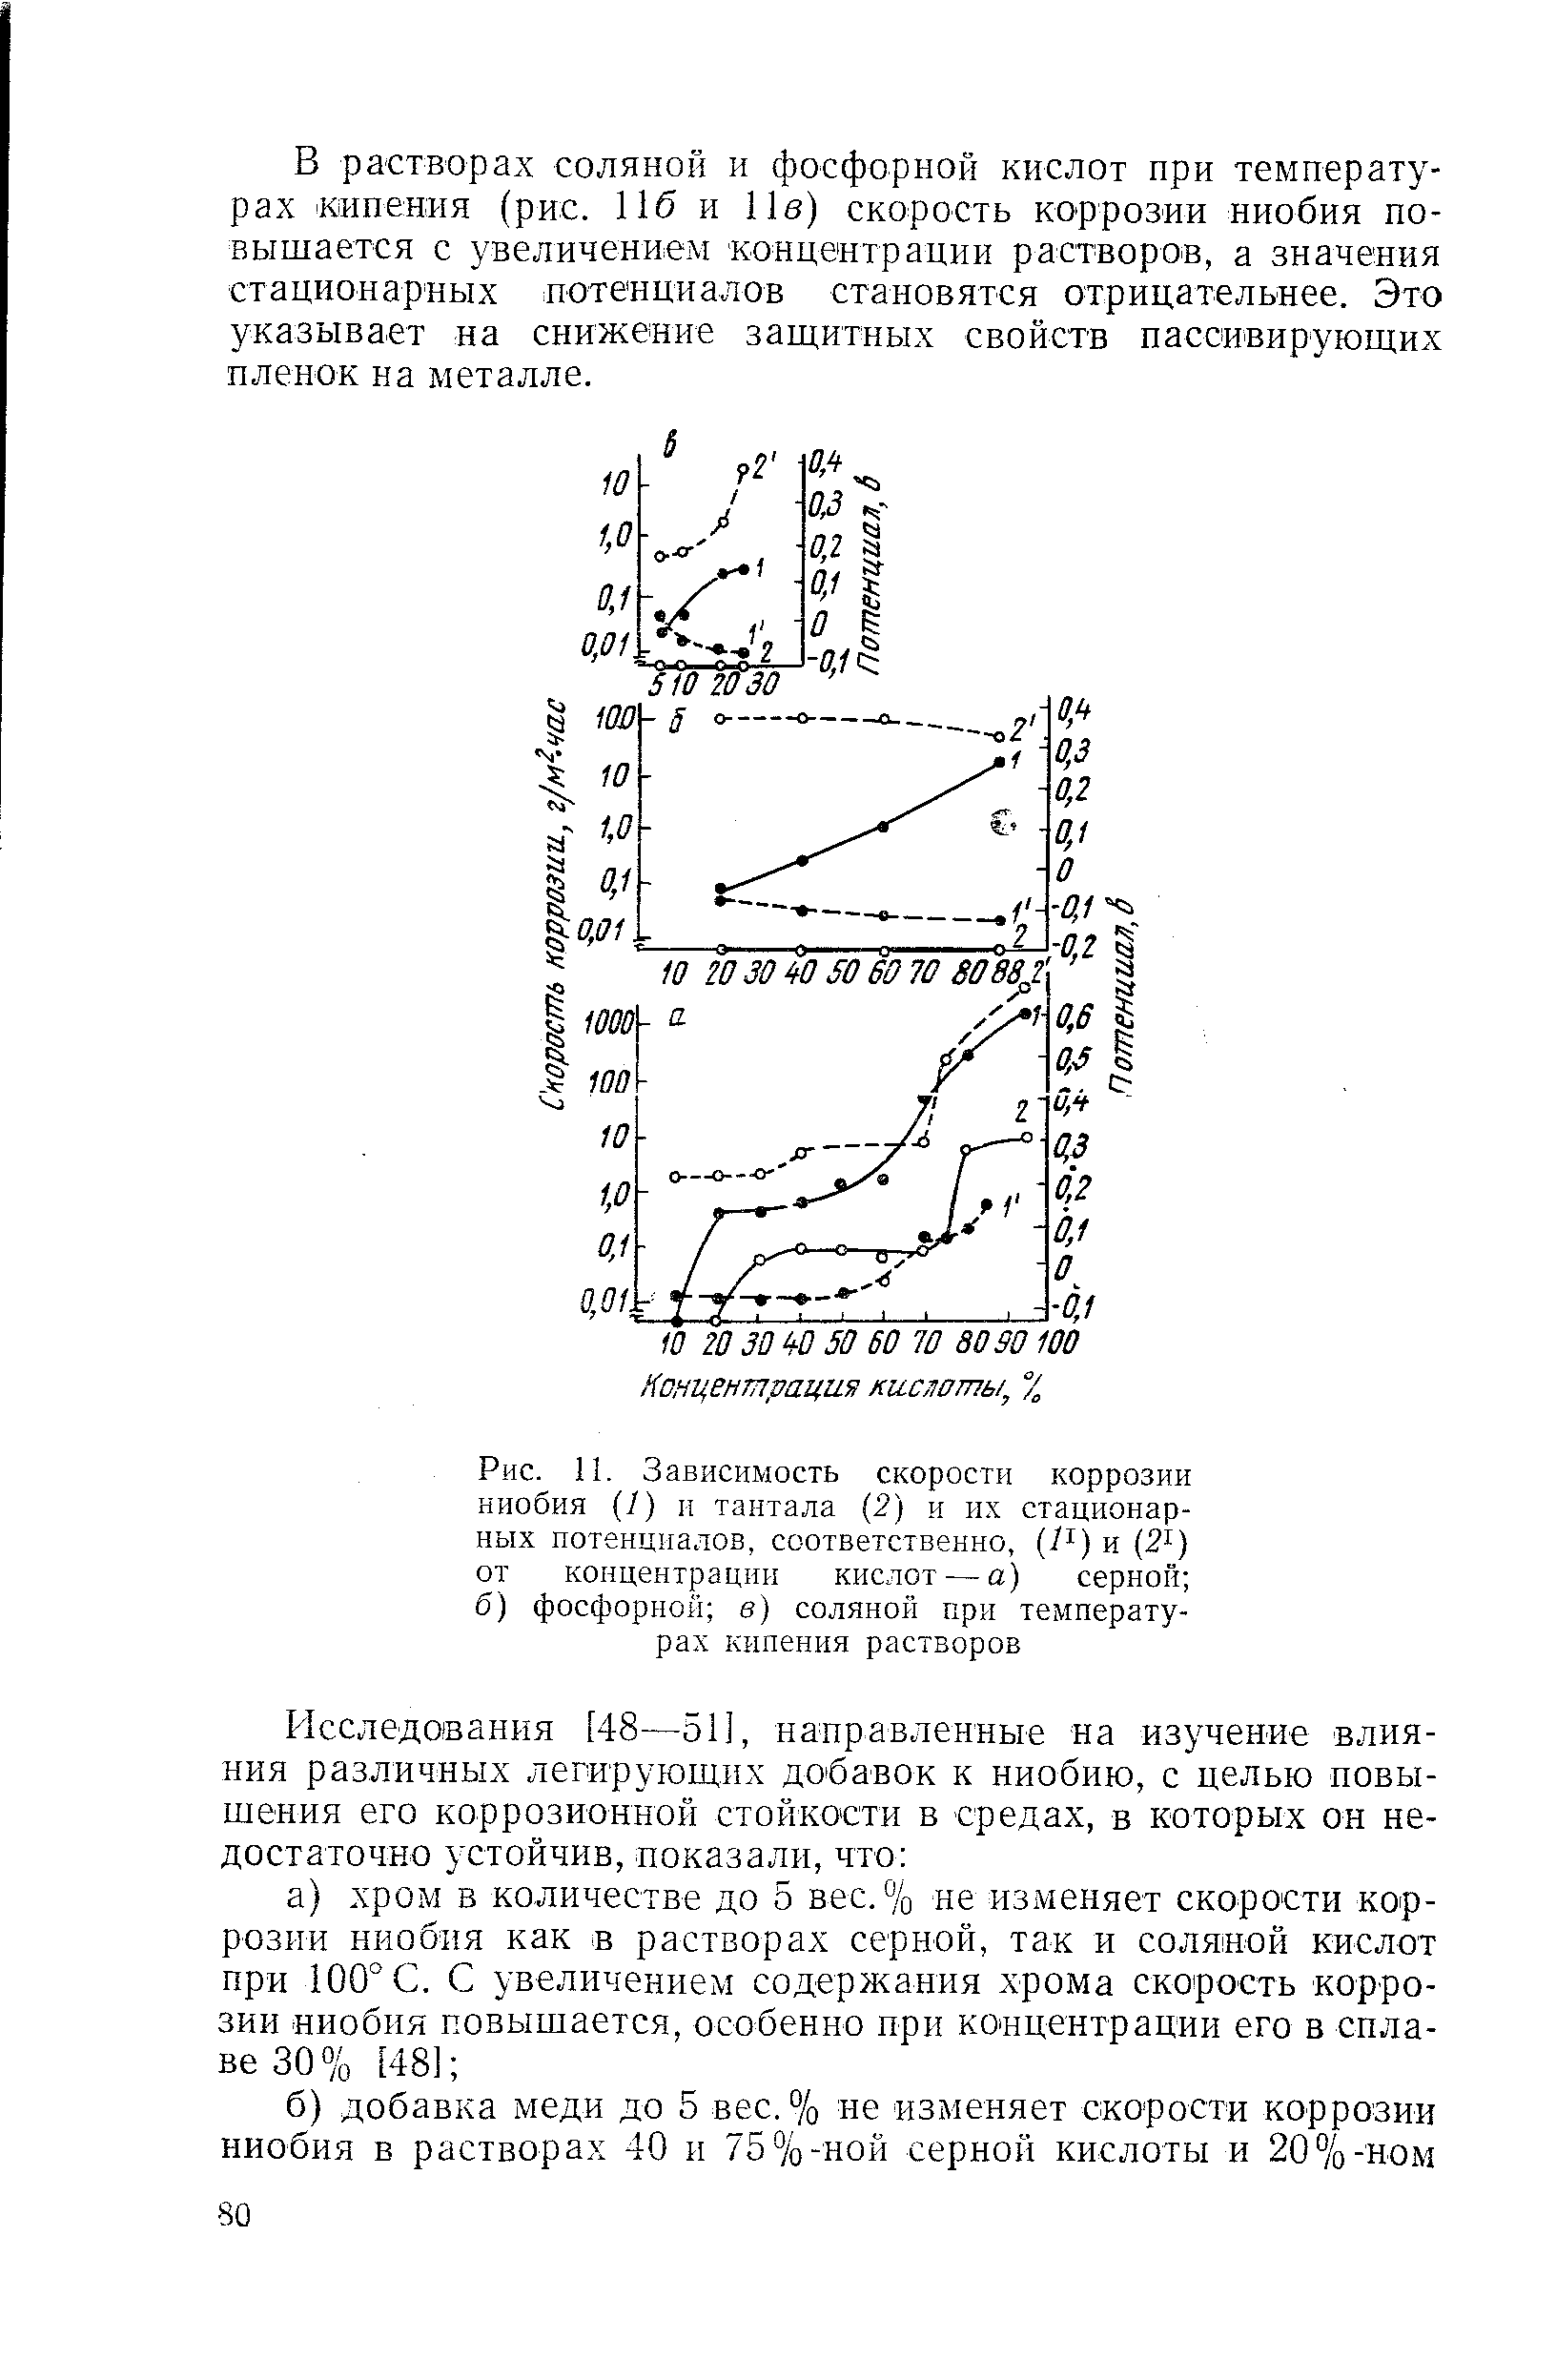 Рис. 11. Зависимость <a href="/info/39683">скорости коррозии</a> ниобия (I) и тантала (2) и их стационарных потенциалов, соответственно, [1 ] и (2 ) от концентрации кислот — а) серной б) фосфорной в) соляной при <a href="/info/12741">температурах кипения</a> растворов
